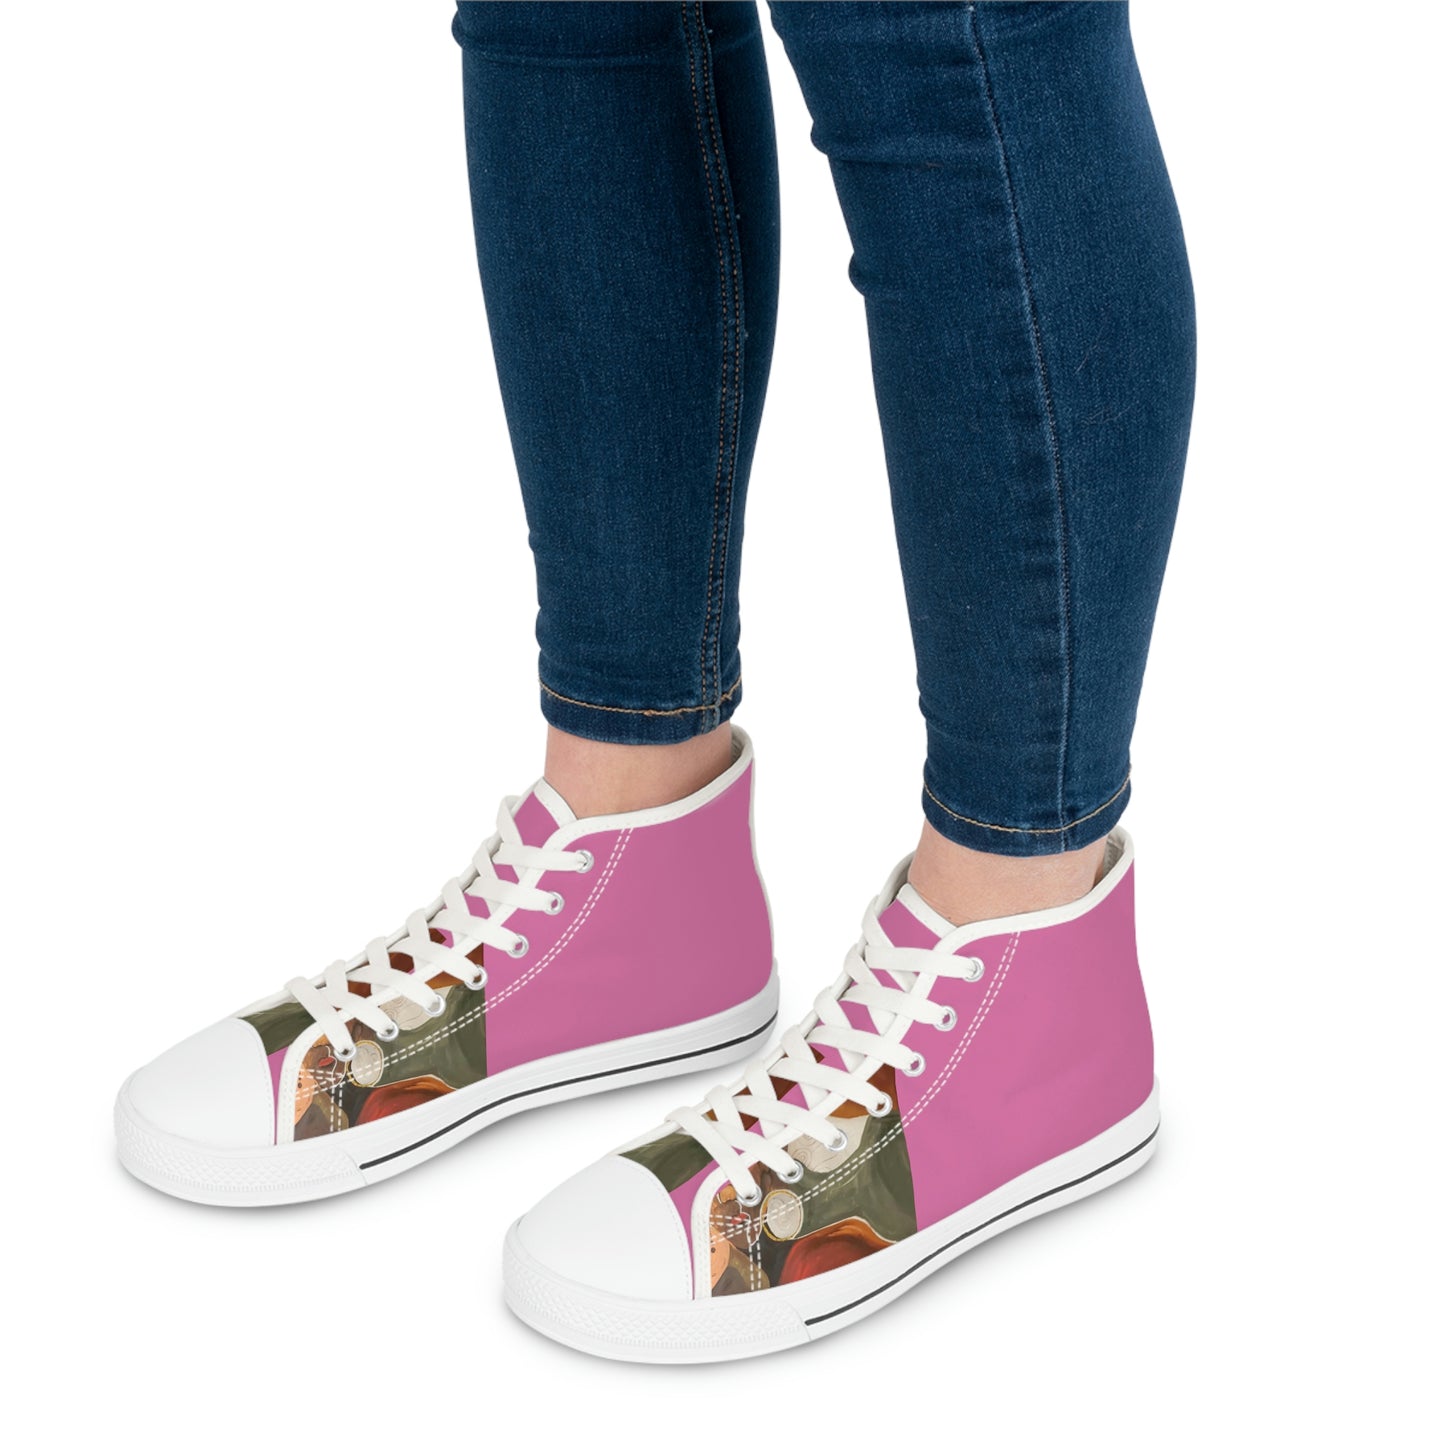 Women's High Top Pink Sneakers